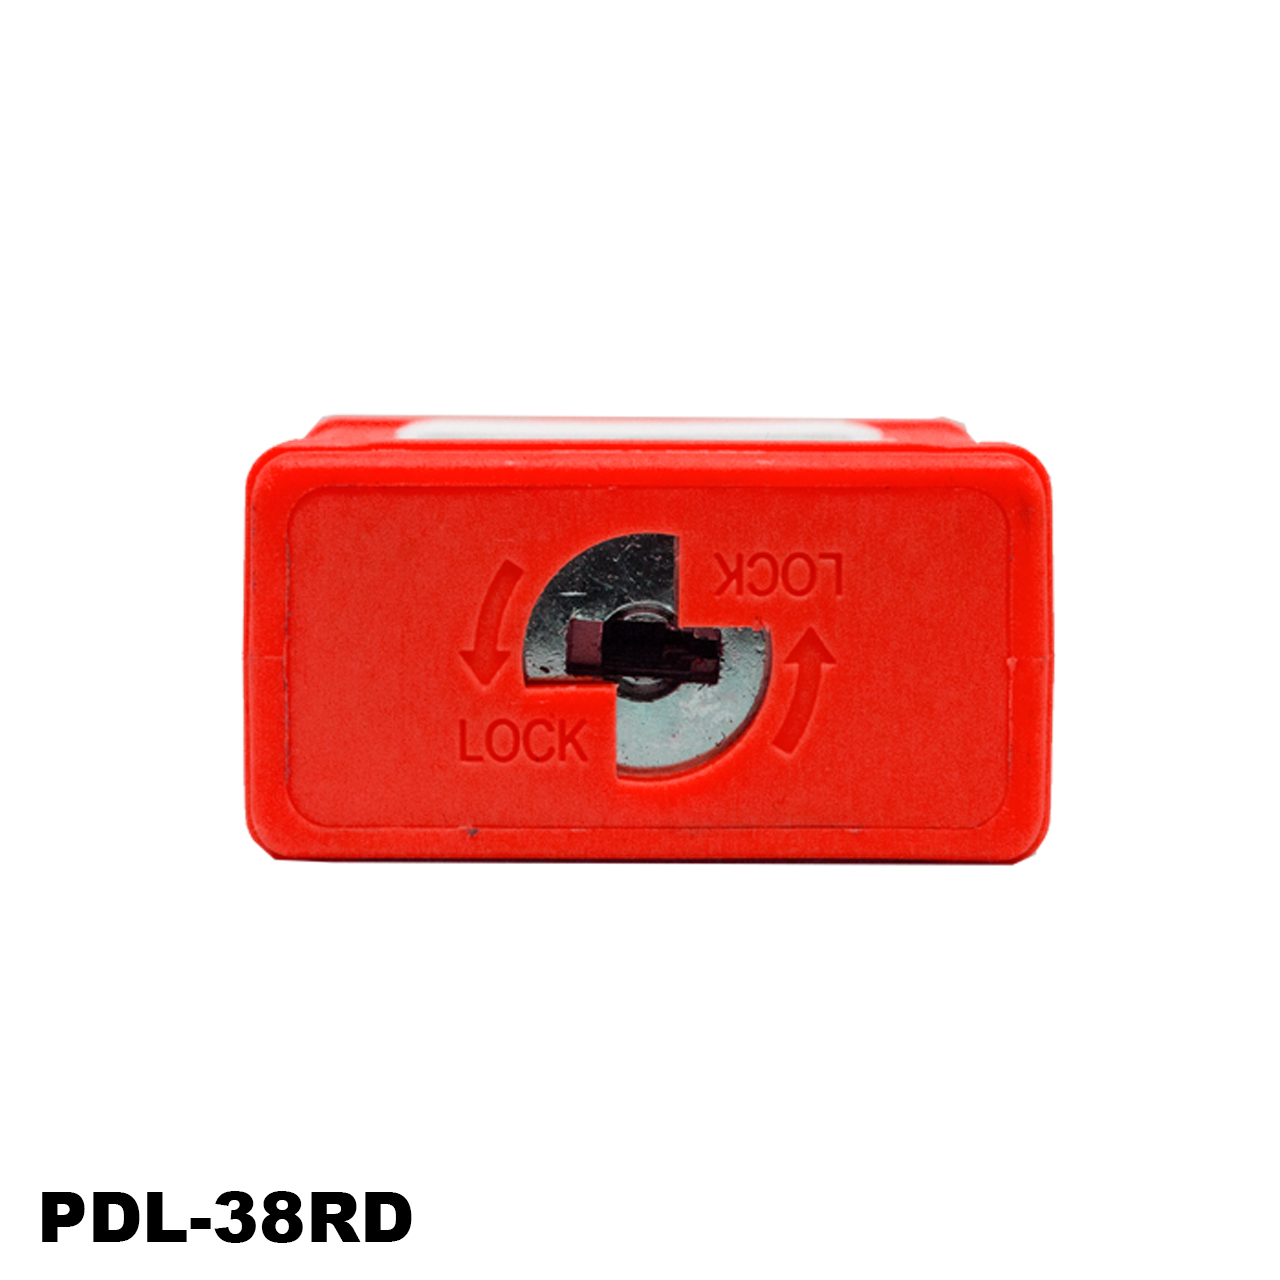 Candado de seguridad de aluminio, 1 1/2, color rojo, LM.APD-38RD005